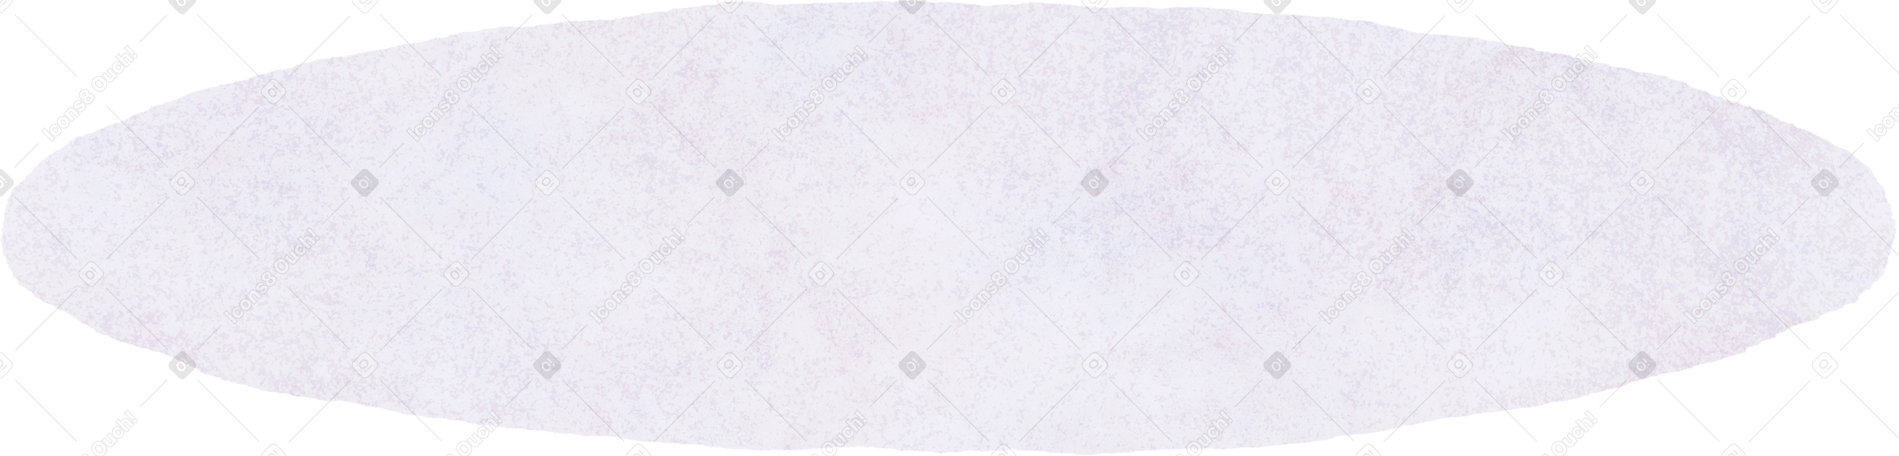 floor Illustration in PNG, SVG